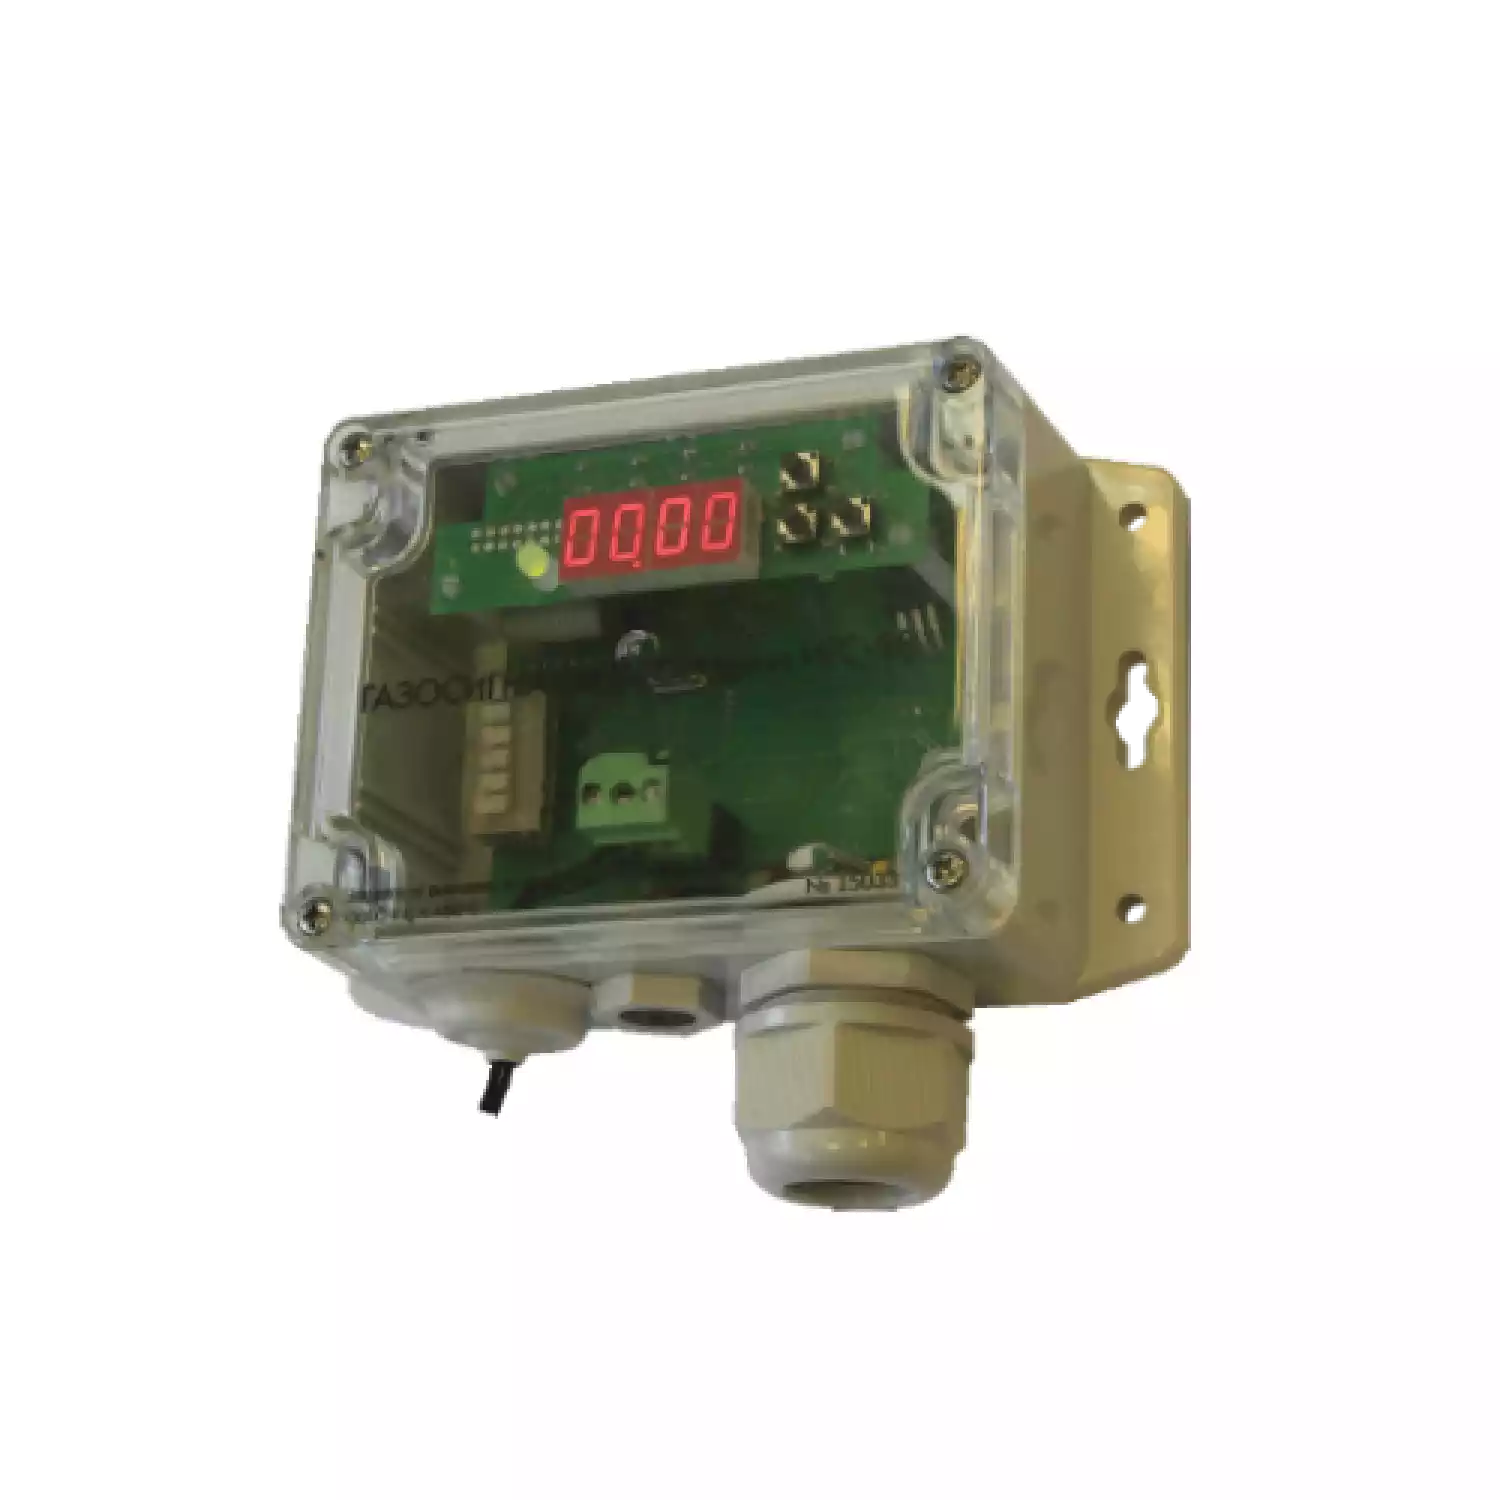 Дукат-СВ серии ИГС-98 газосигнализатор стационарный на диоксид углерода CO2 исполнение 011 - 1